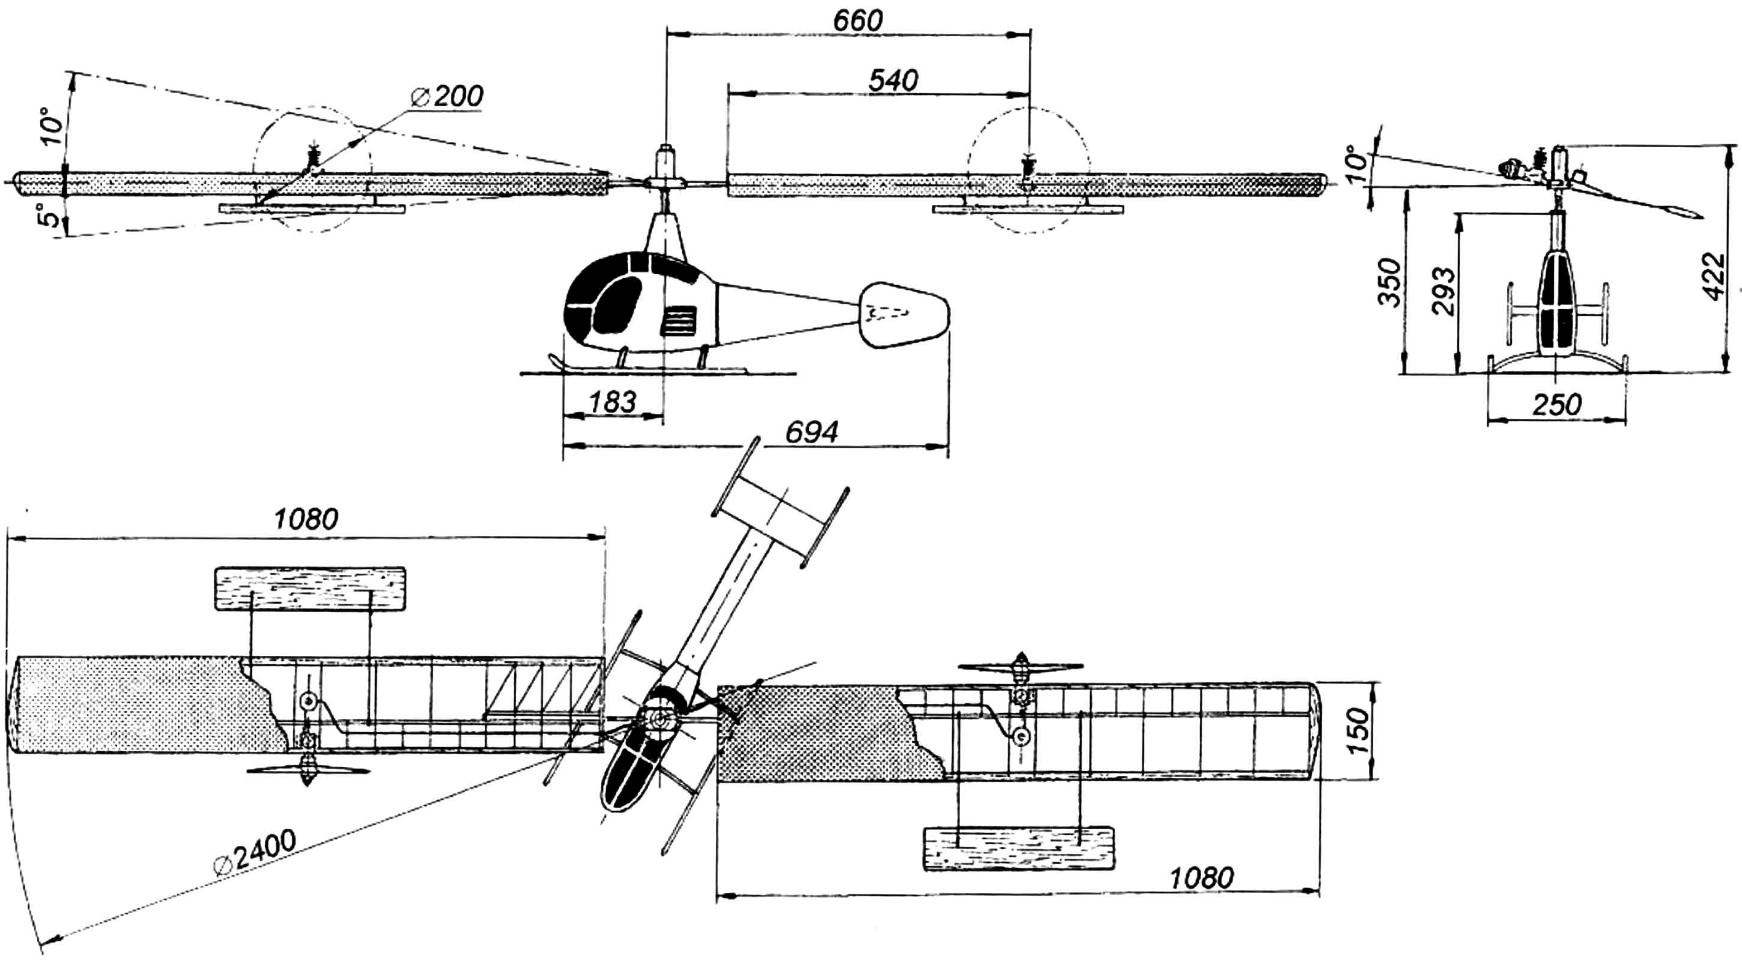 Геометрическая схема двухмоторной свободнолетающей модели вертолета (на плановой проекции фюзеляж условно повернут)